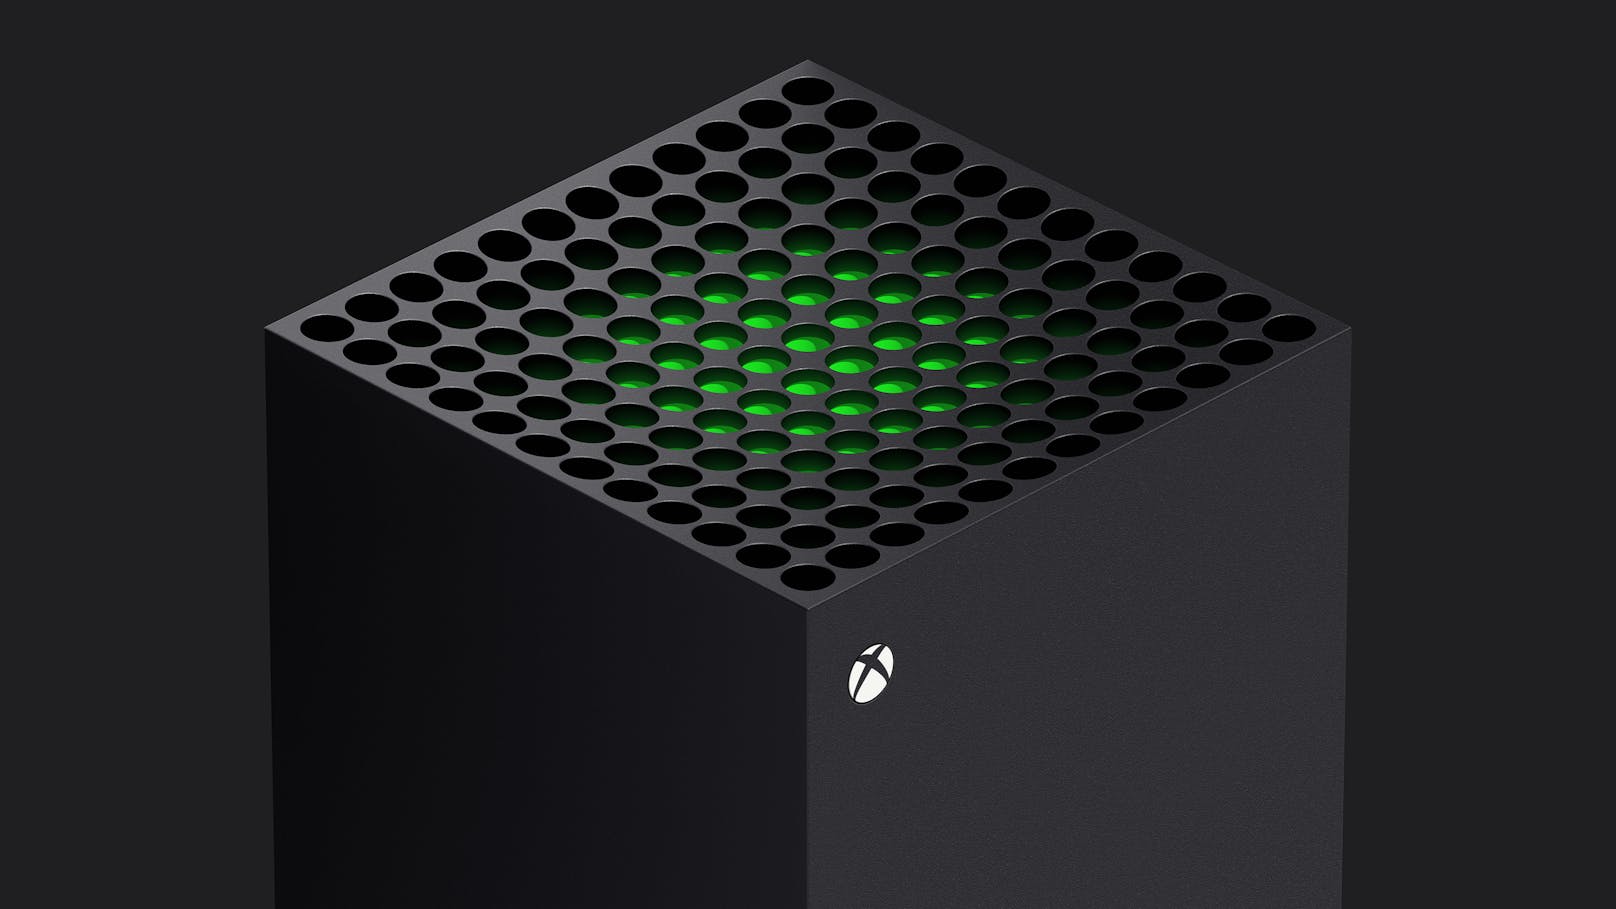 Das Geheimnis ist gelüftet: Die nächste Microsoft-Konsole trägt den Namen Xbox Series X und erscheint pünktlich zum Weihnachtsgeschäft 2020.